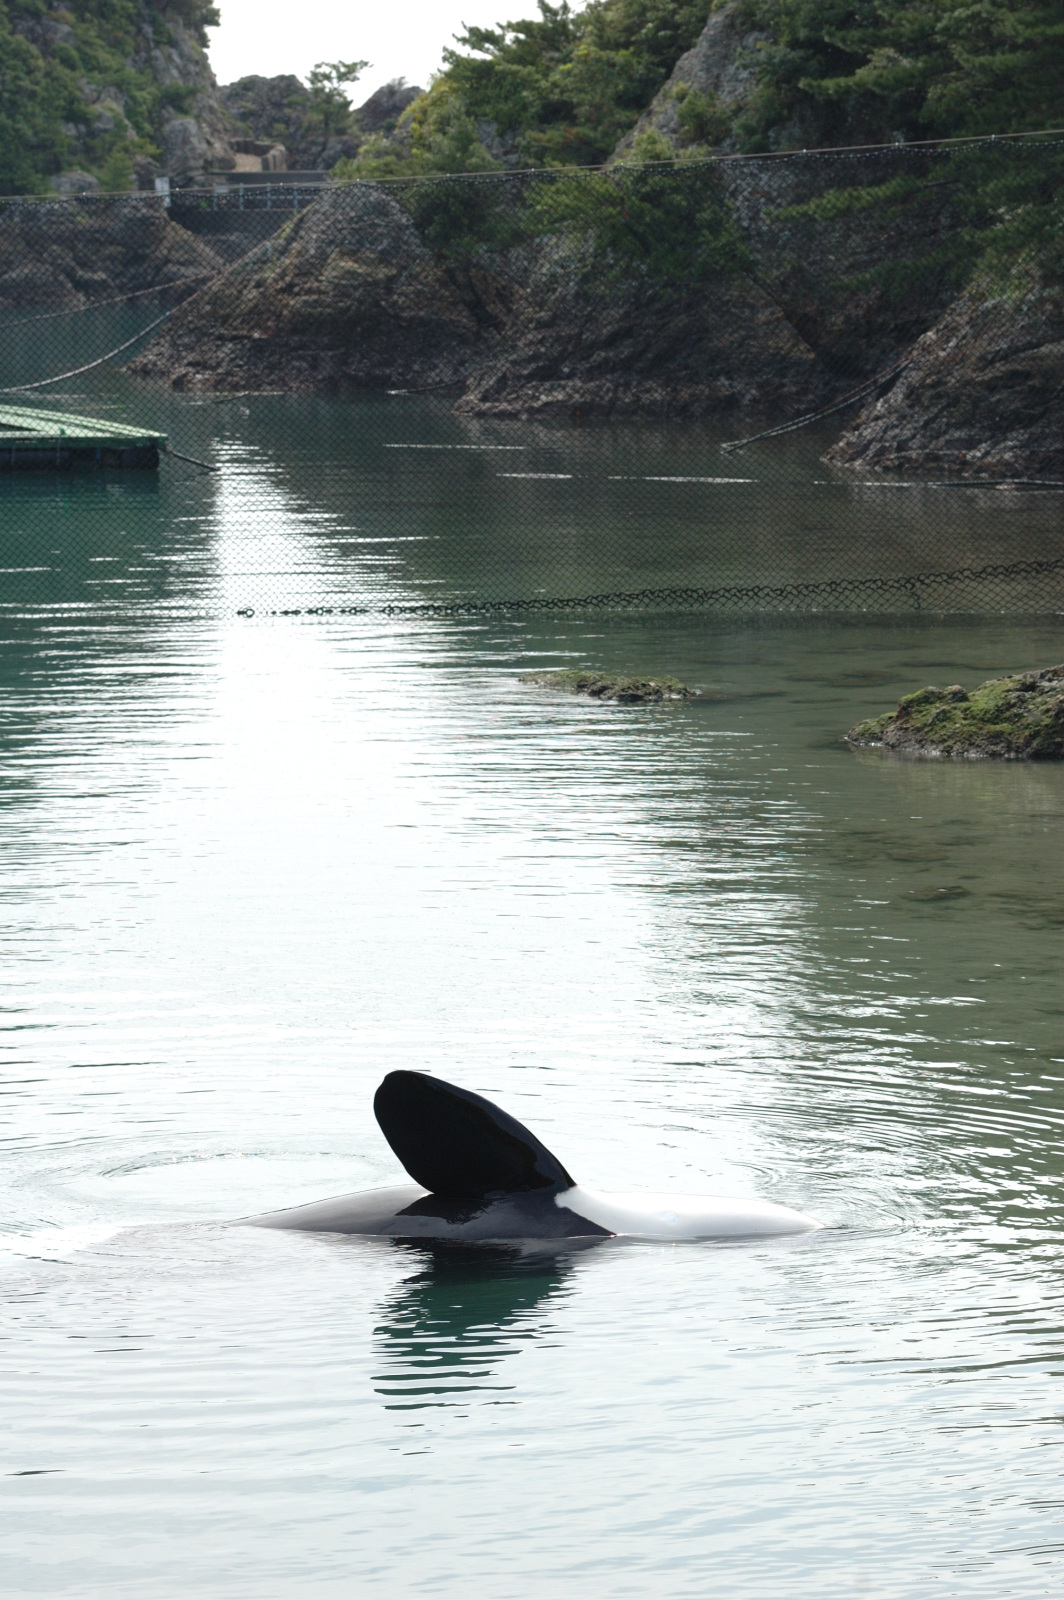 雪野 太地町クジラの博物館 シャチ ナミ ここは入り江で 奥は海になってます 単にネットで仕切られているだけという 野趣溢れる光景 行った事のある水族館は多くないのですが ここまで自然な場所は珍しい部類かと